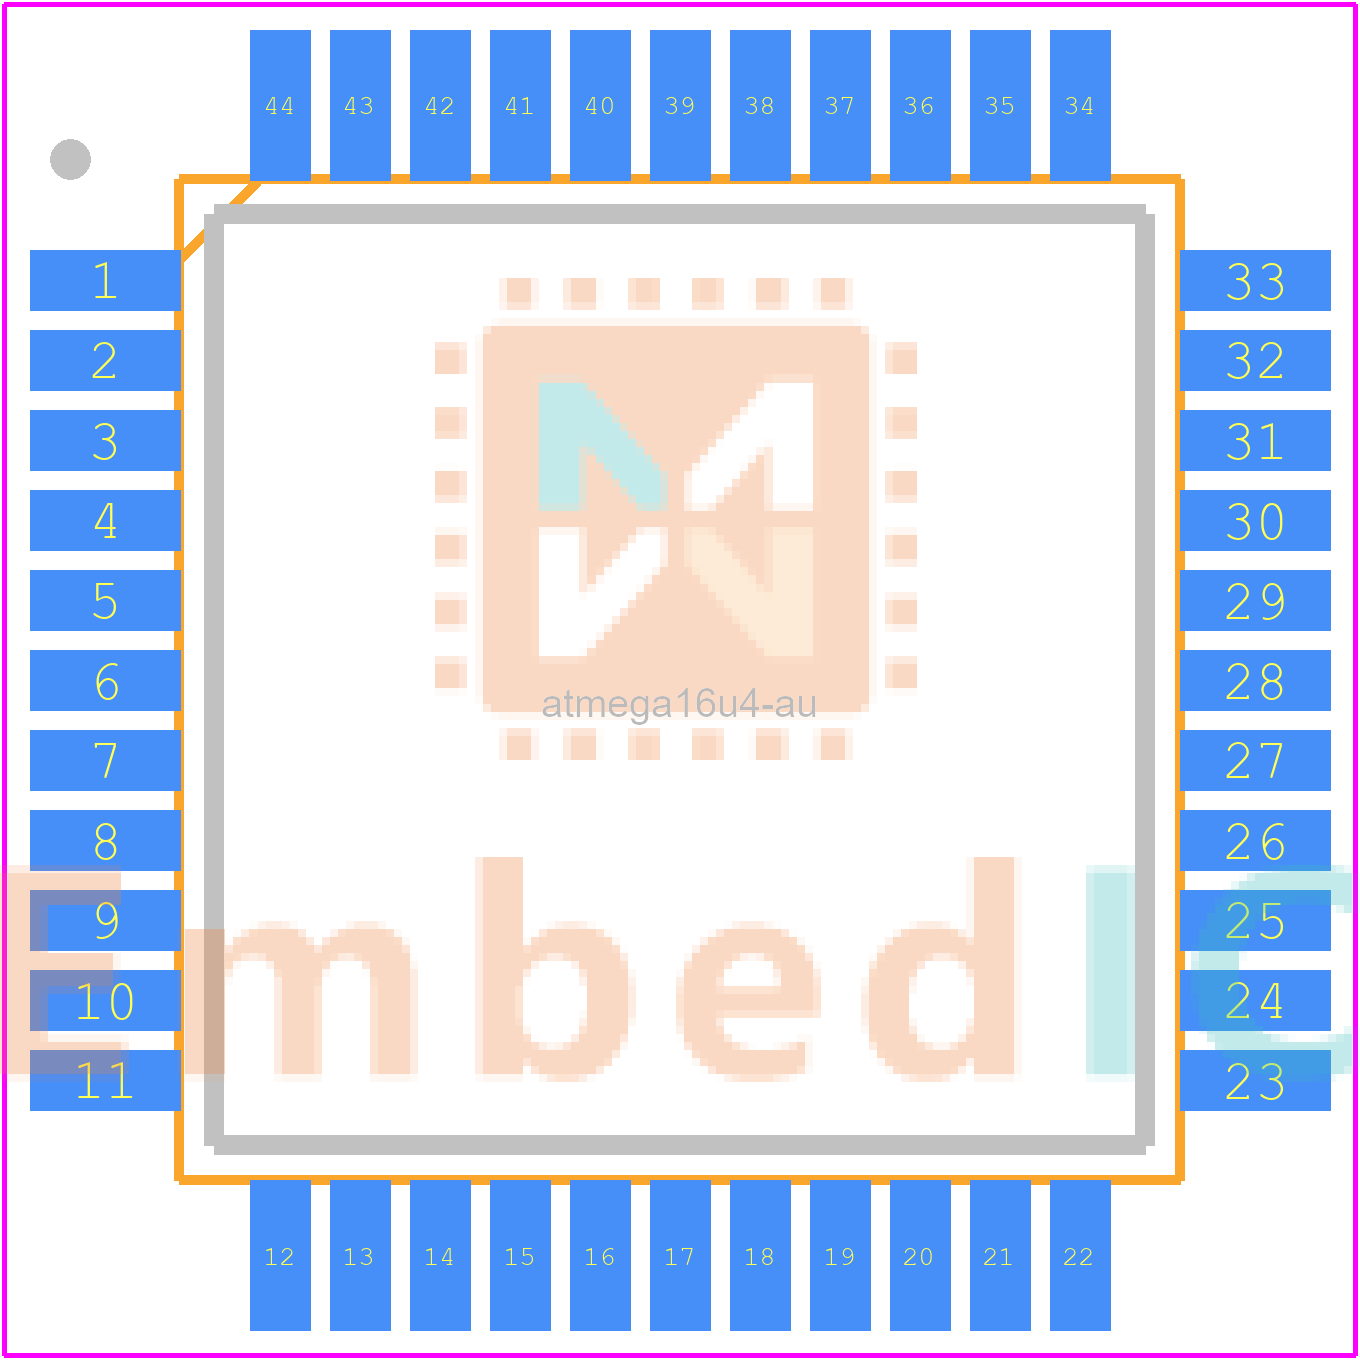 ATMEGA16U4-AU Microchip 8bit MCU | EmbedIc